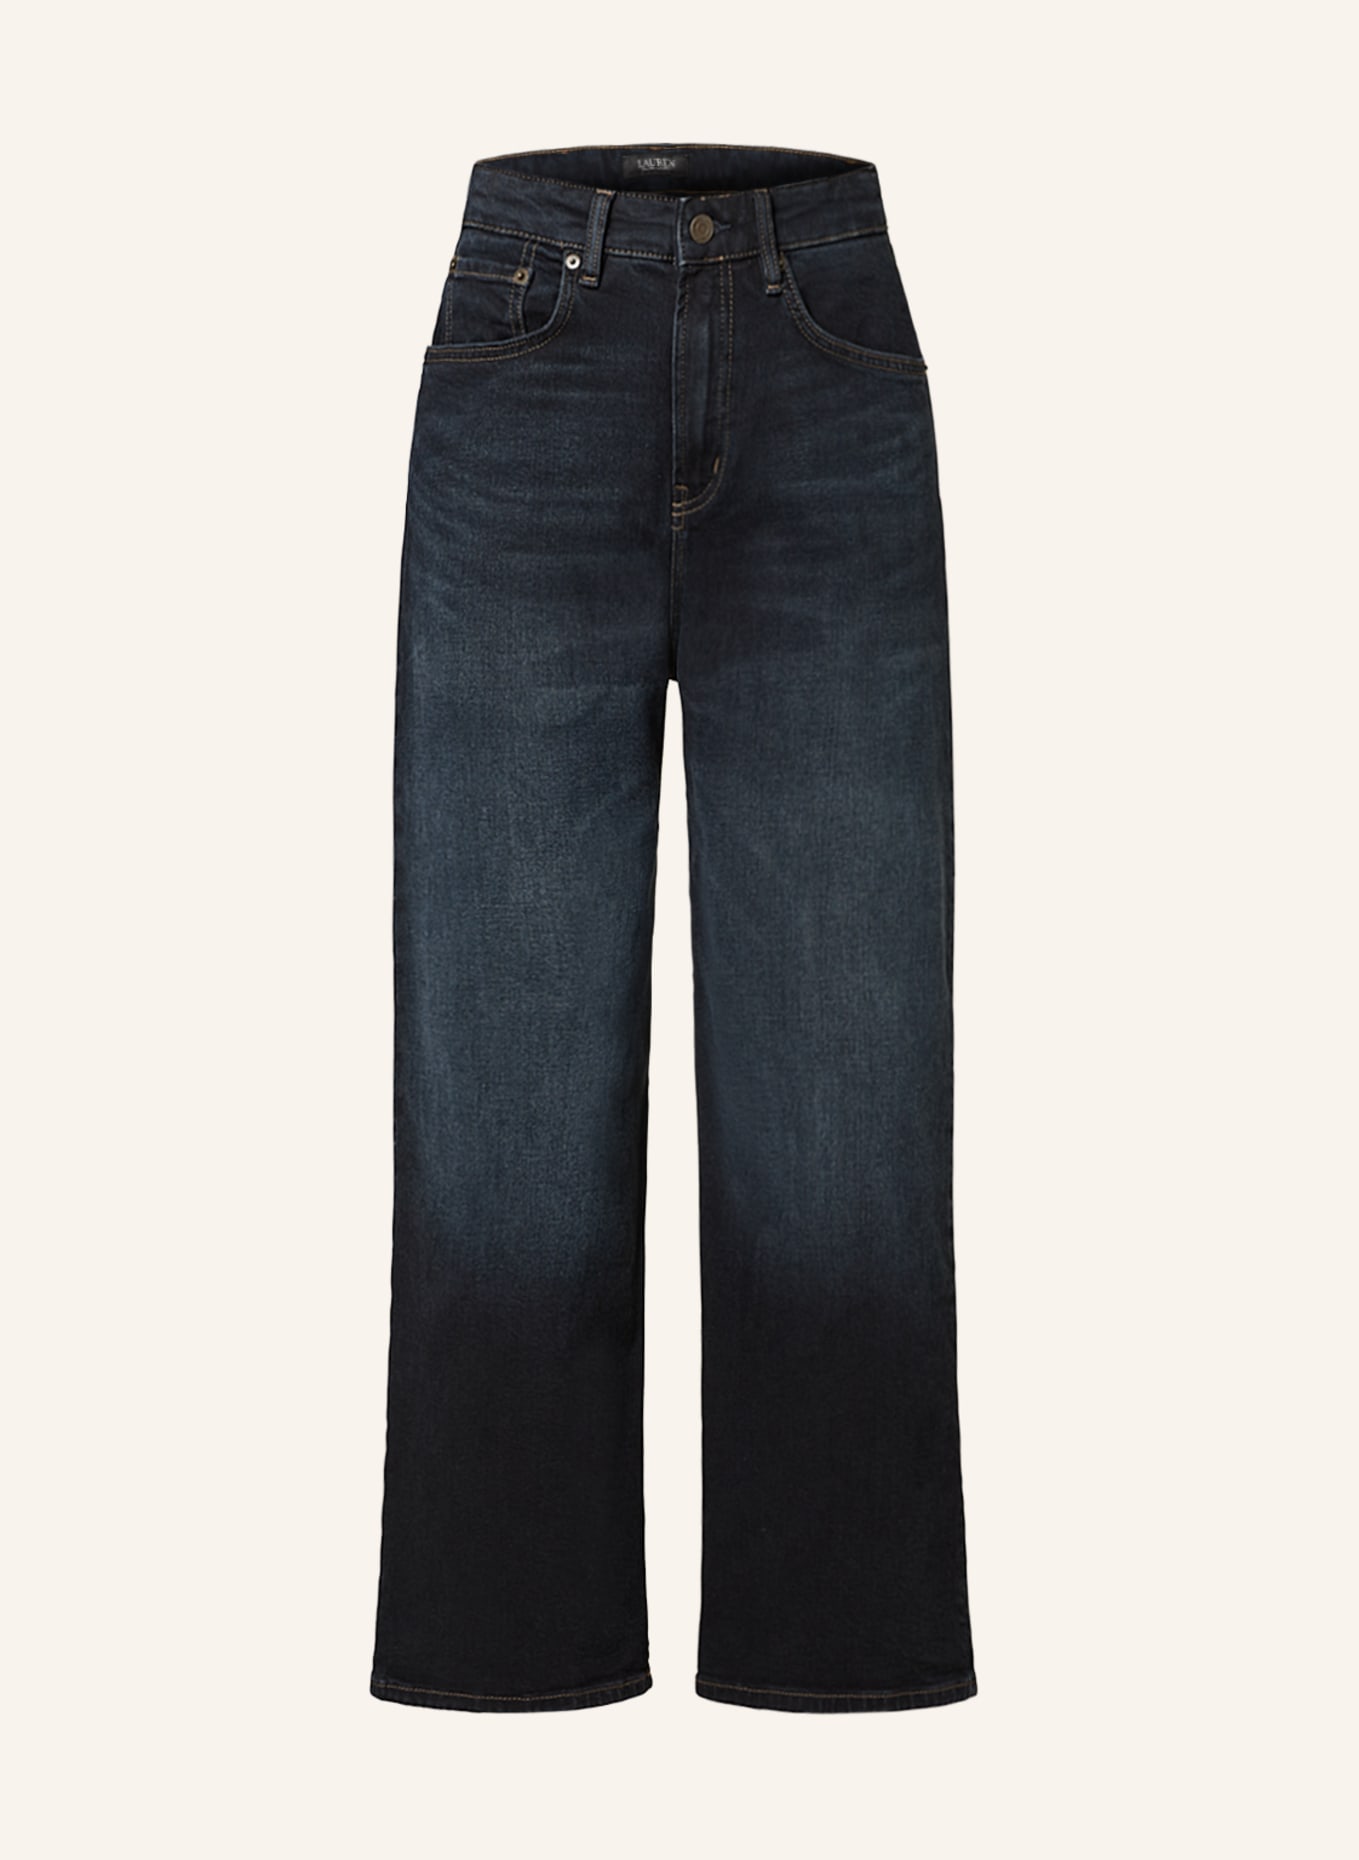 LAUREN RALPH LAUREN 7/8 jeans, Color: 001 NOAM WASH (Image 1)